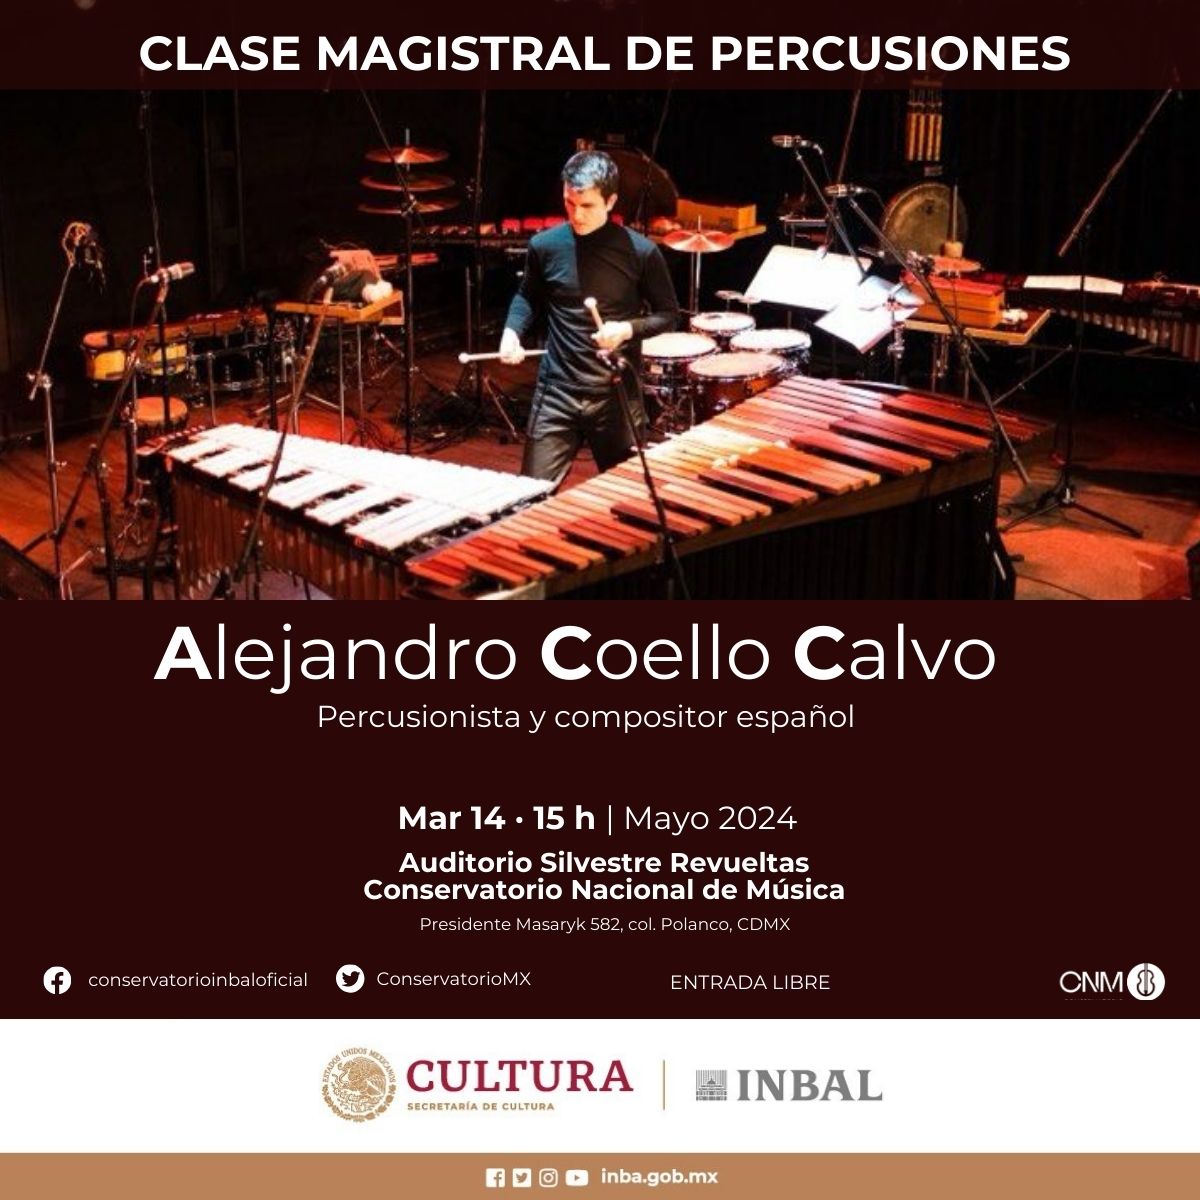 El percusionista y compositor español Alejandro Coello Calvo, catedrático en la Escuela Superior de Música Franz Liszt en Weimar,